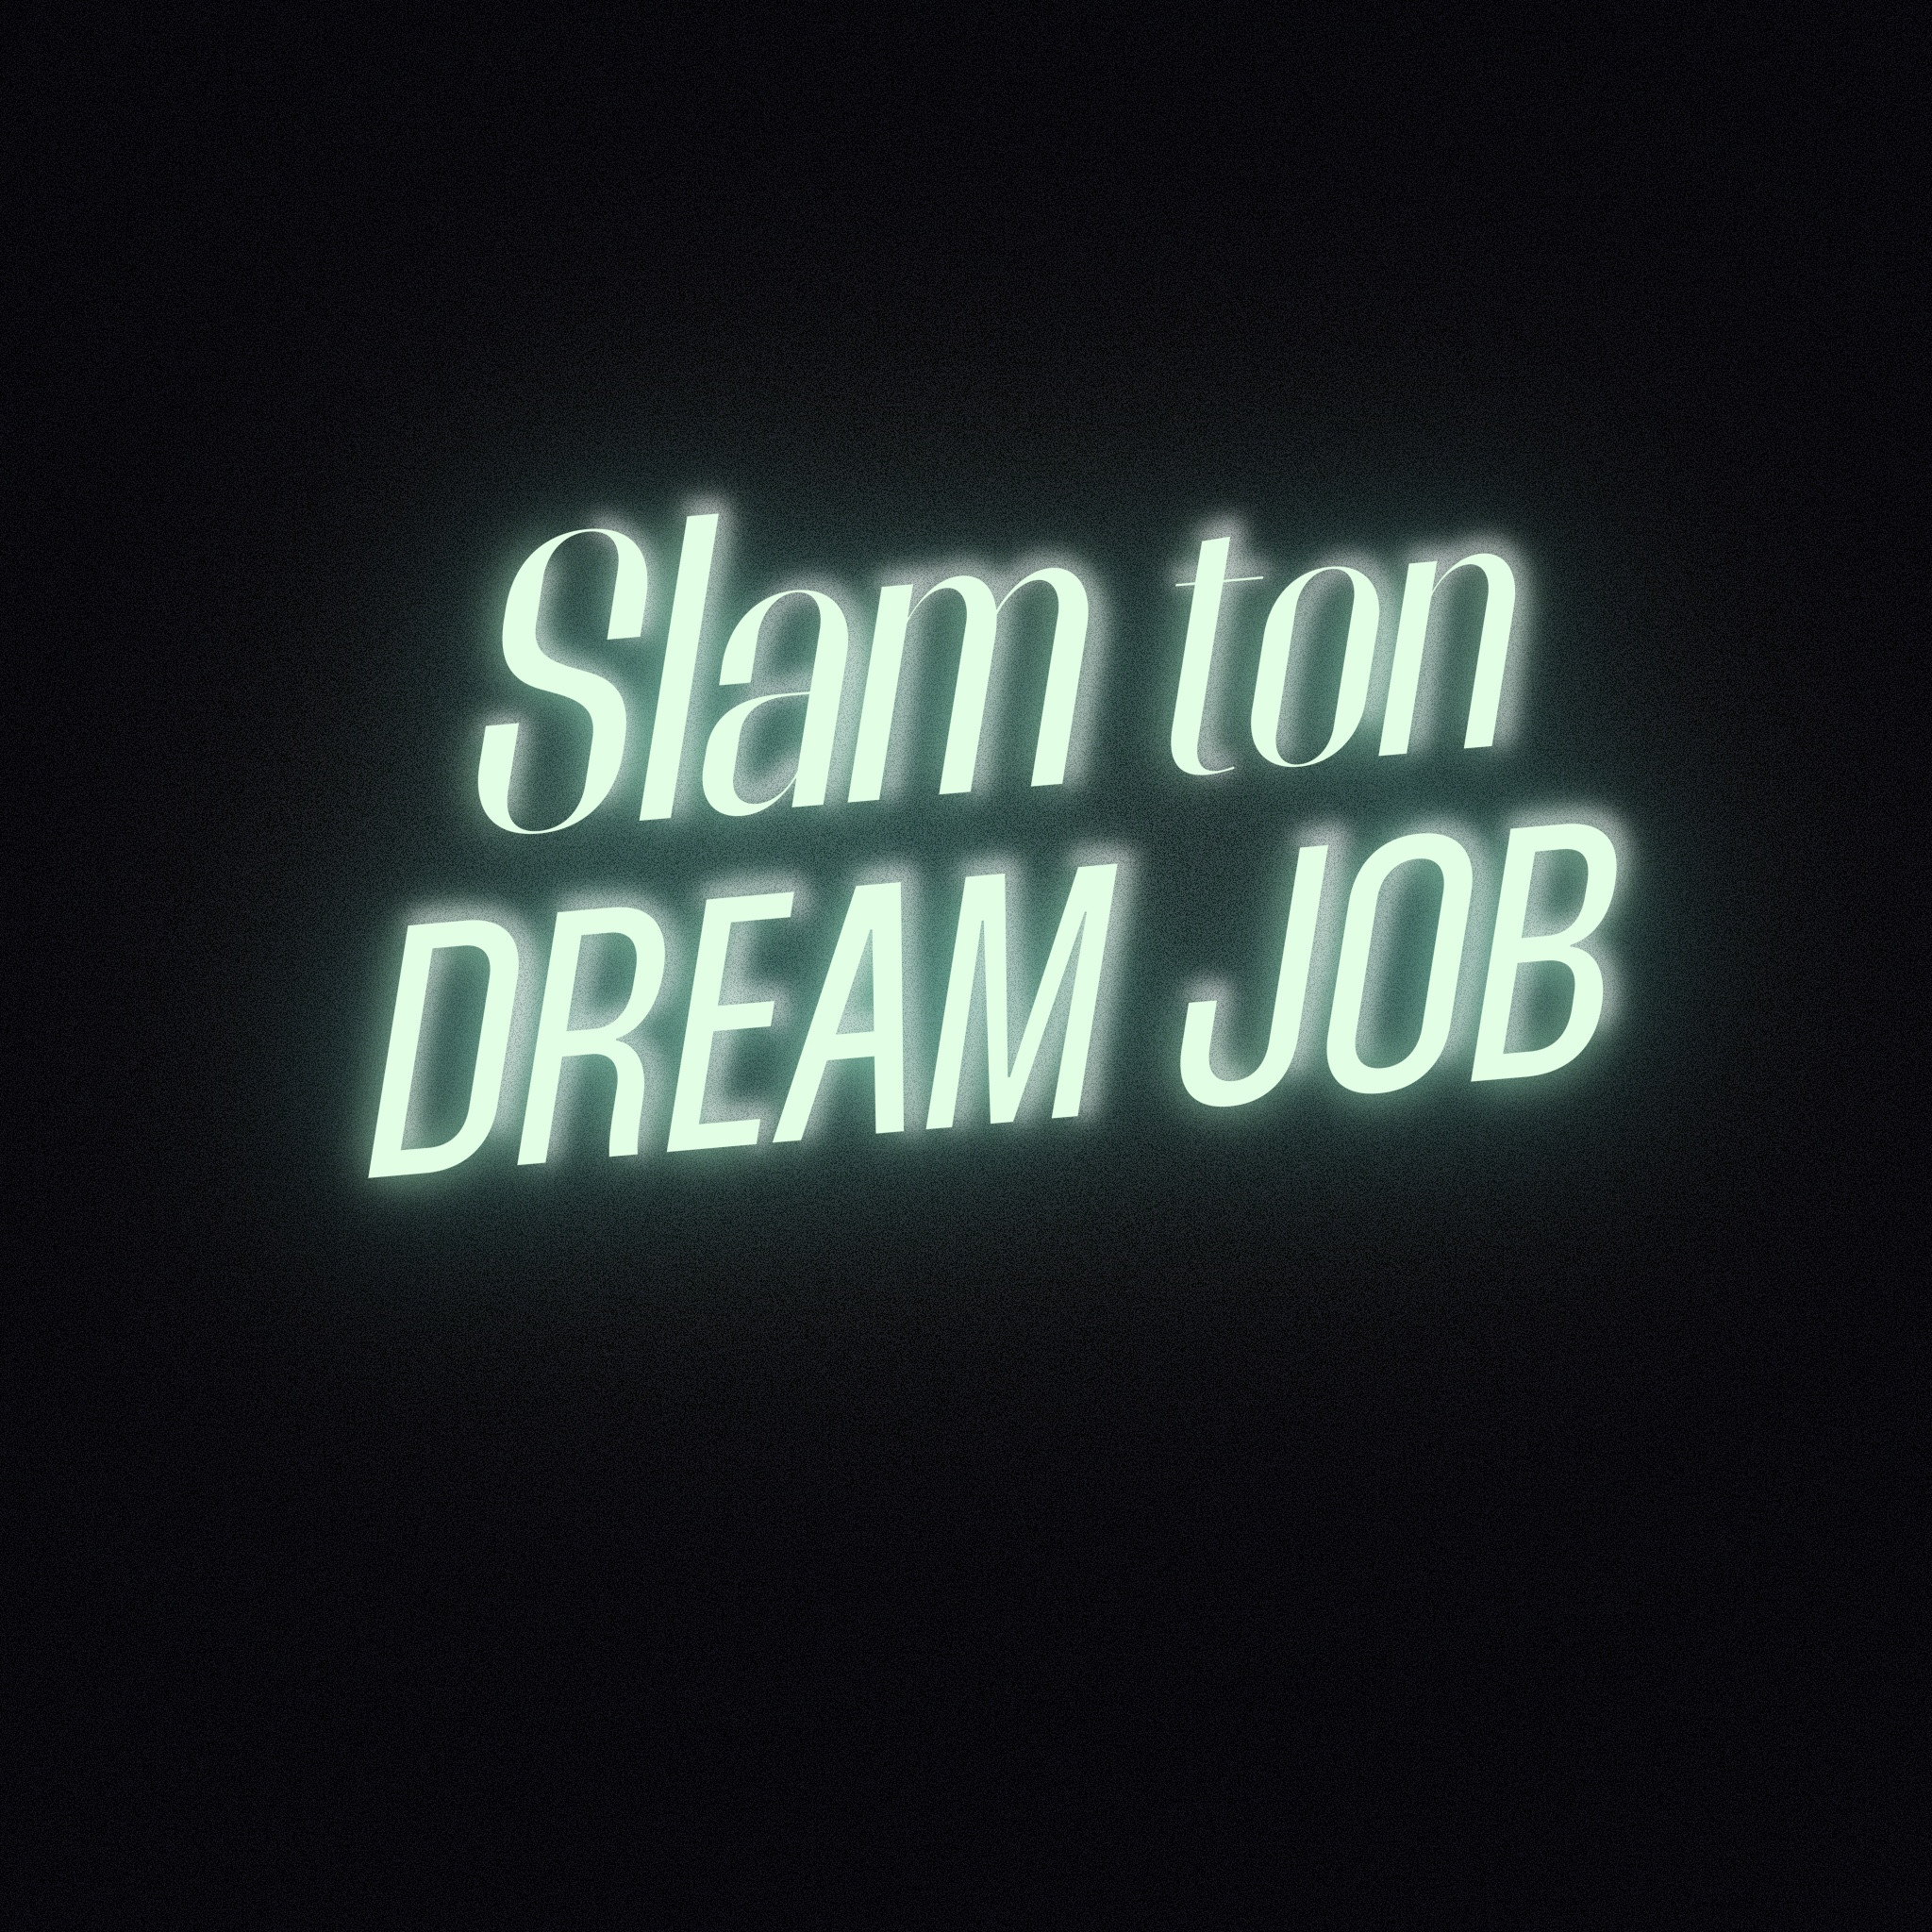 slam_ton_dream_job_vignette_seule_v2.jpg